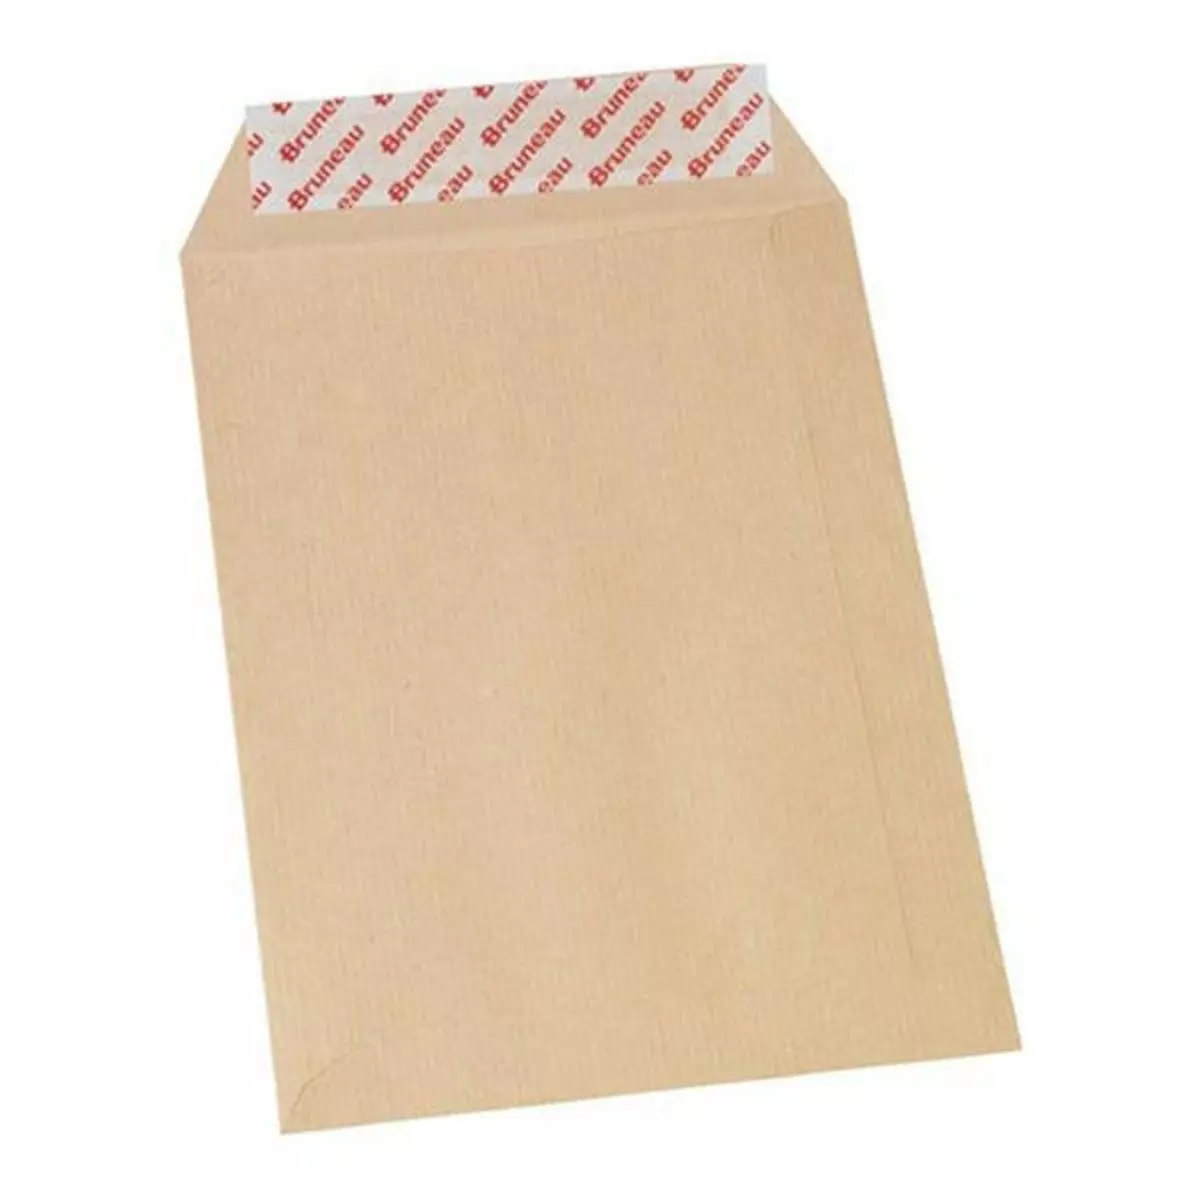 Bruneau 50 enveloppes en papier kraft 90 g - 16,2 x 22,9 cm